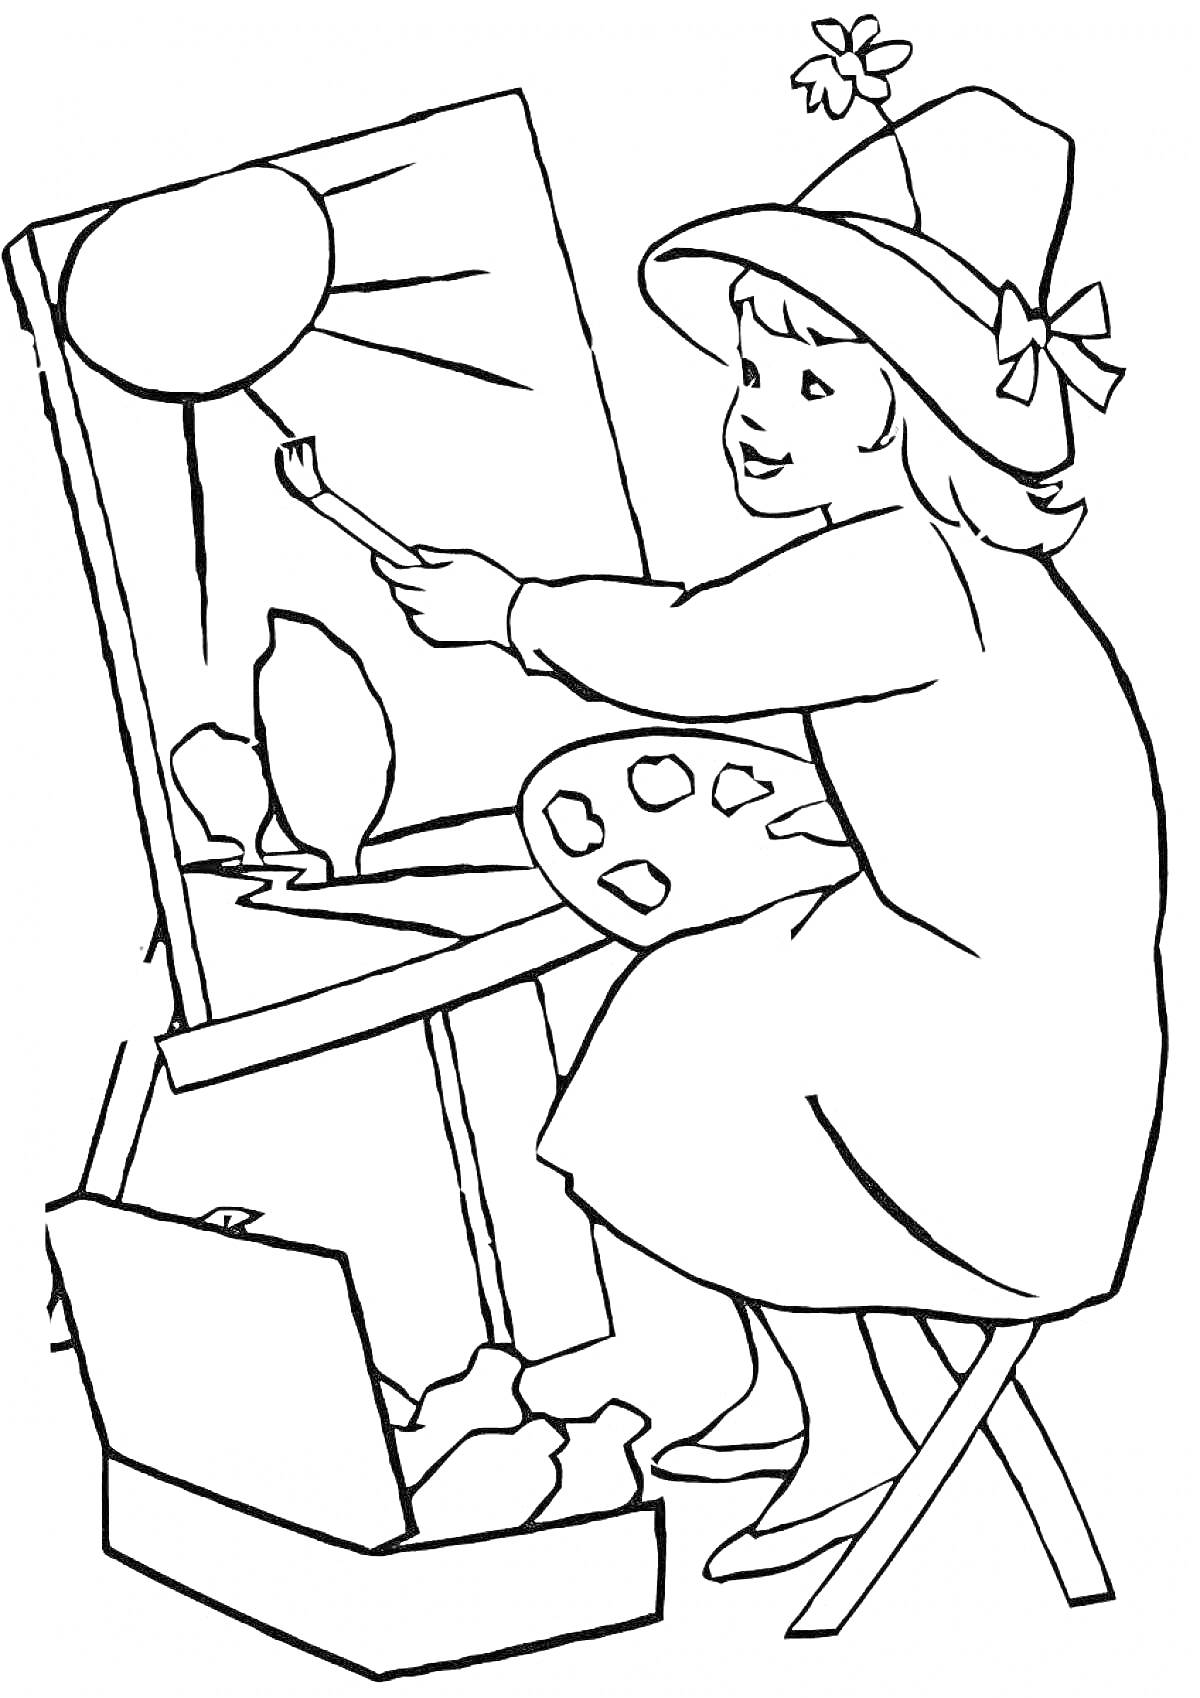 Раскраска девочка-художница с мольбертом и кистью, рисующая пейзаж с солнцем и деревьями, сидящая на стуле и держащая палитру красок, рядом открытый ящик с красками